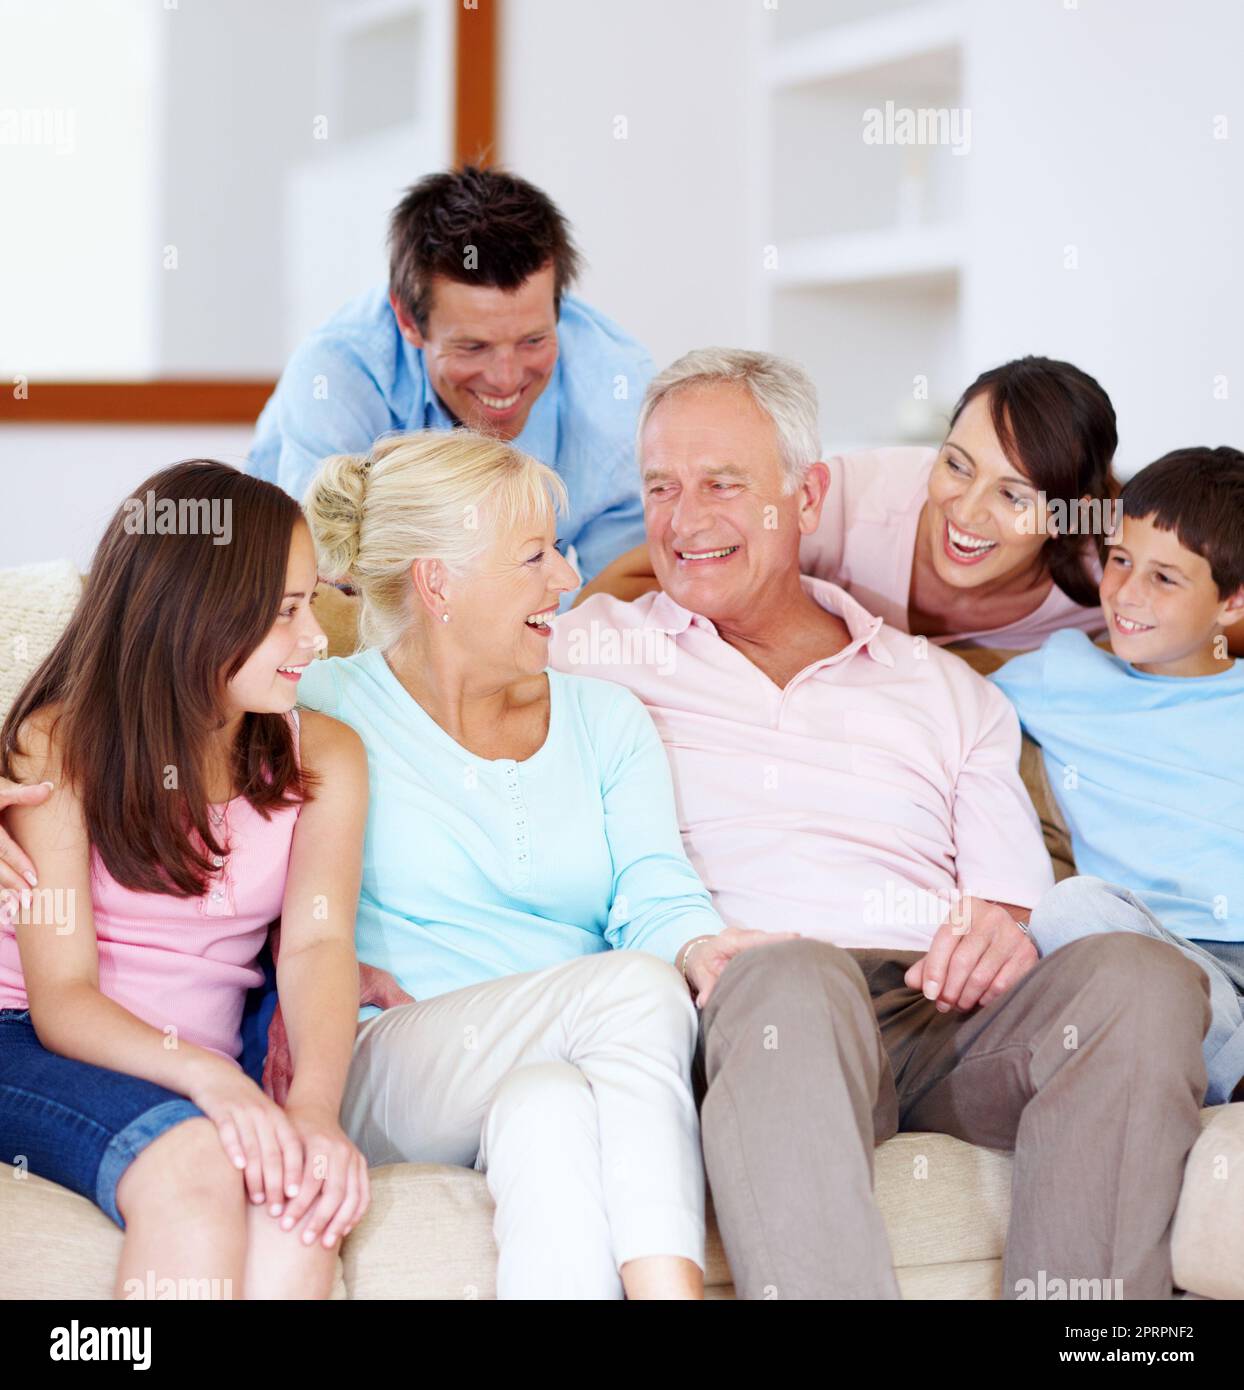 Risate, amore e affetto. Una famiglia che ama ridere insieme su un divano. Foto Stock